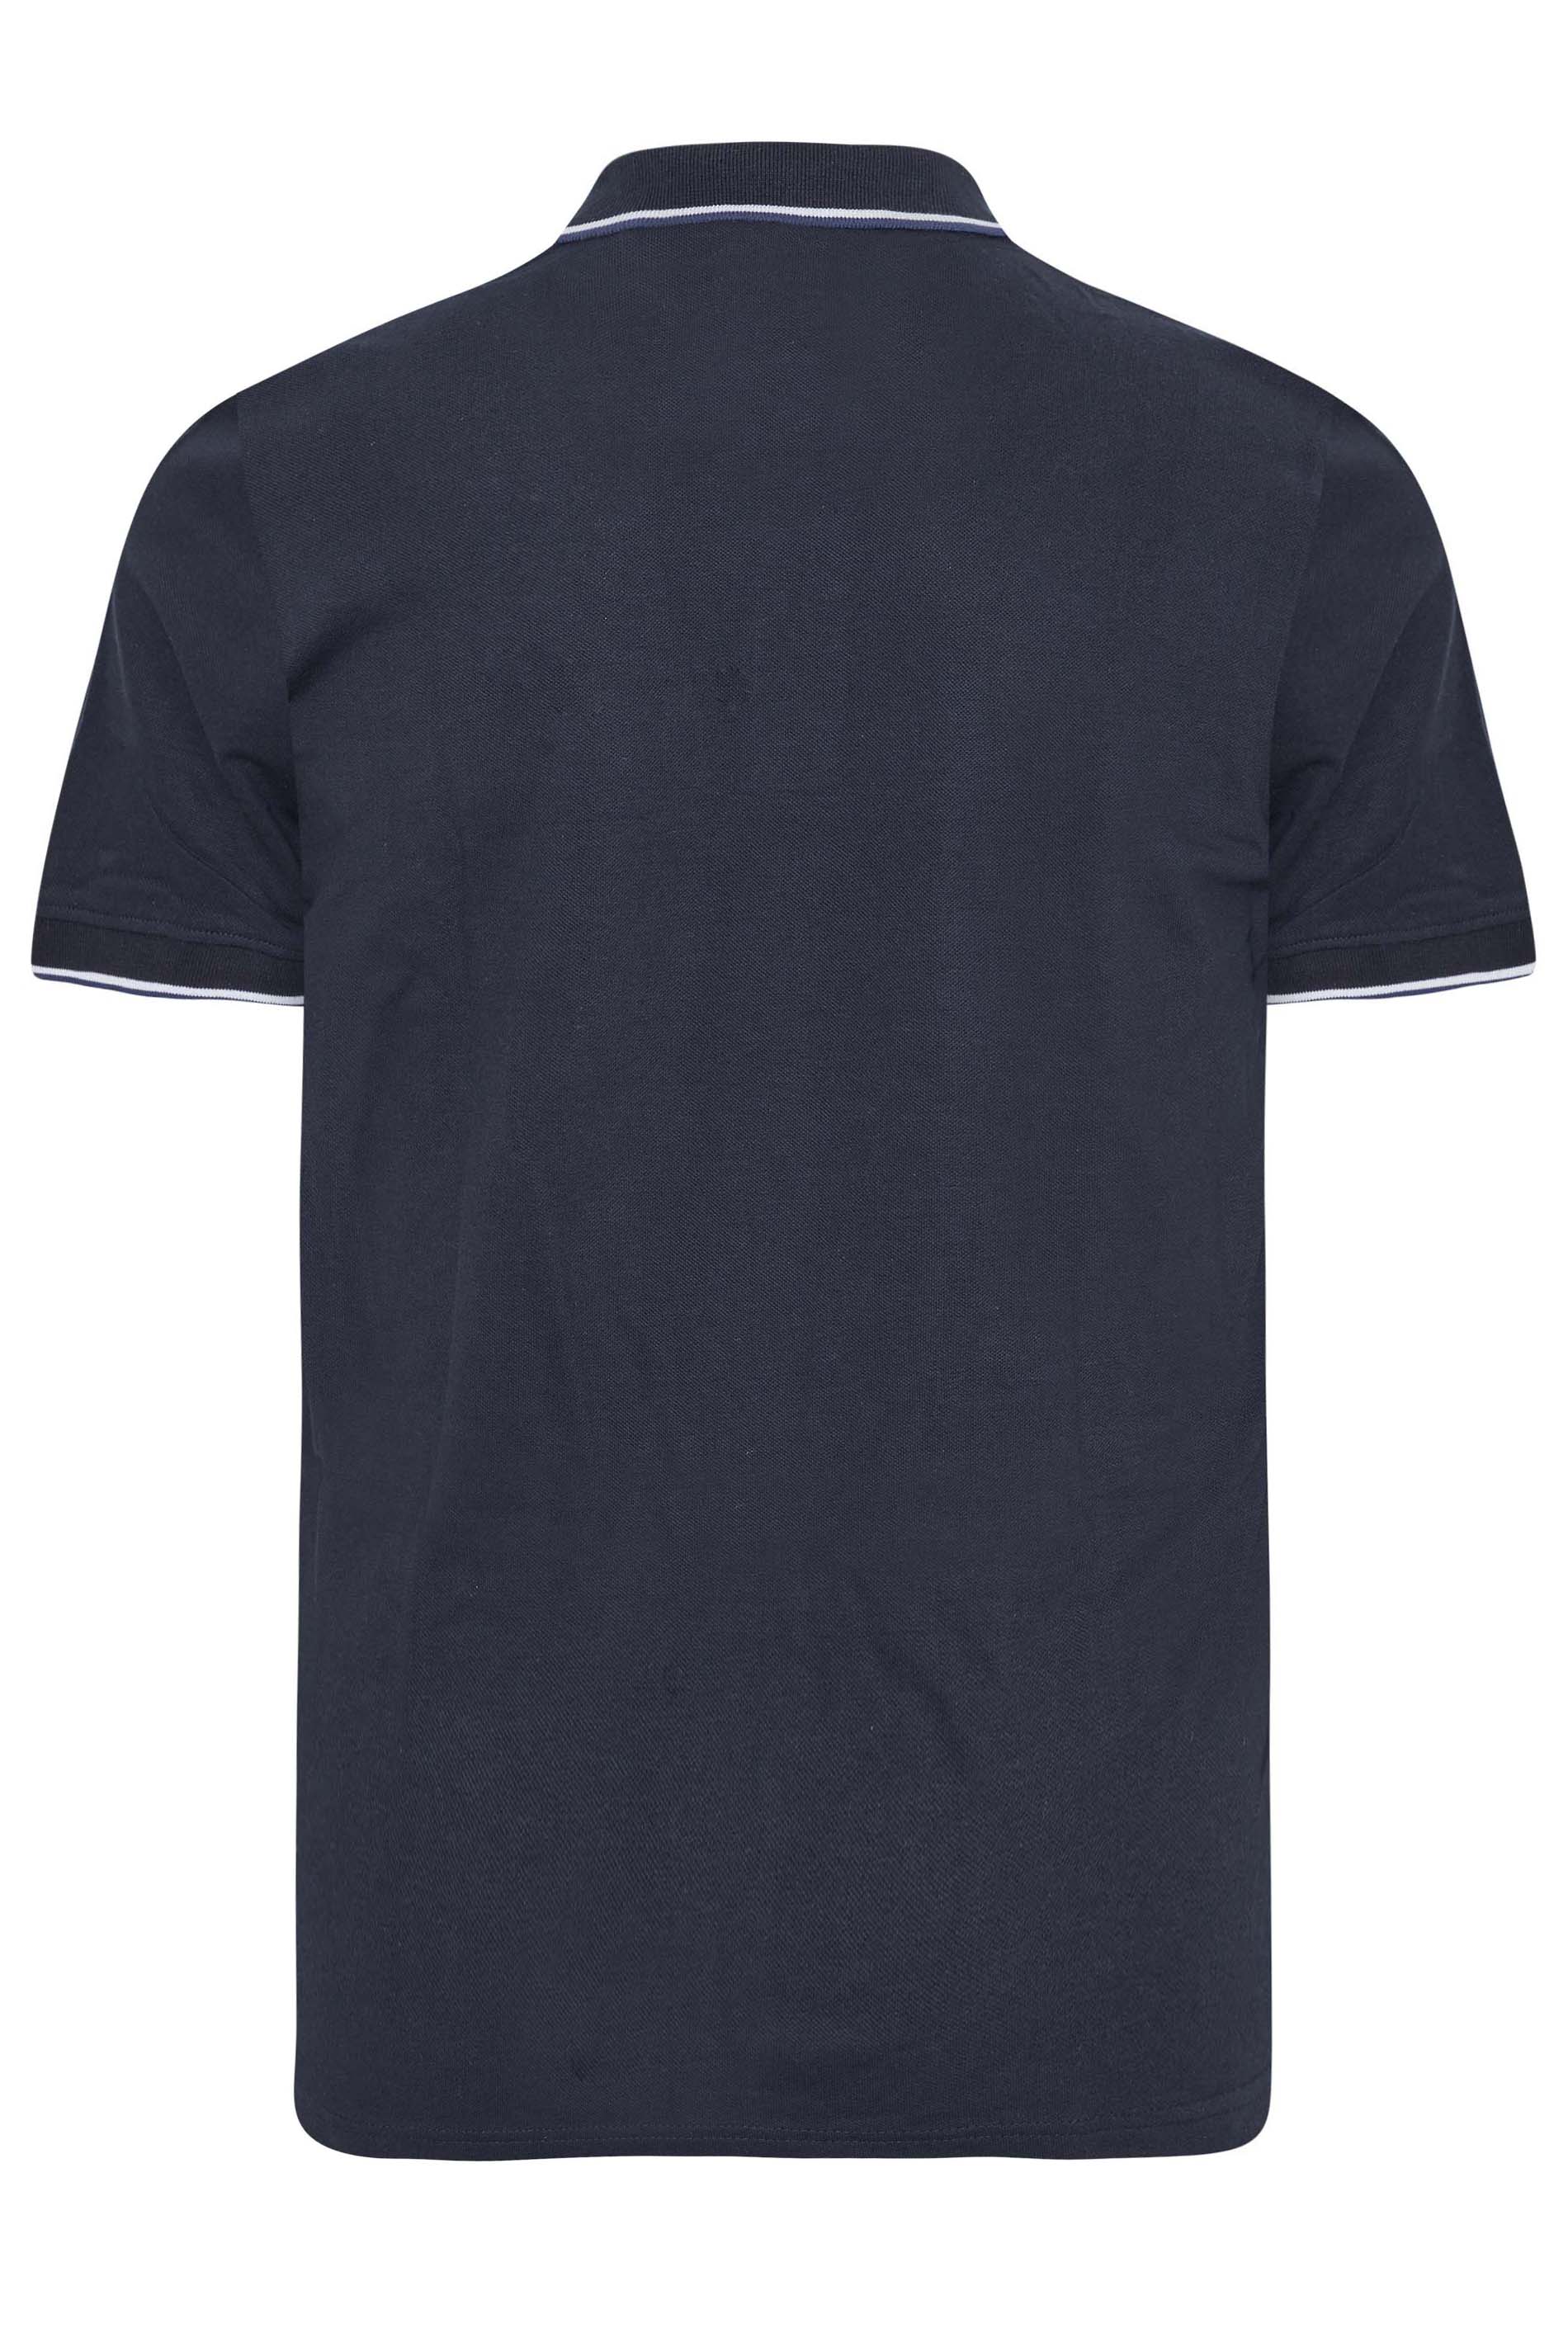 BadRhino Navy Blue Essential Tipped Polo Shirt | BadRhino 3